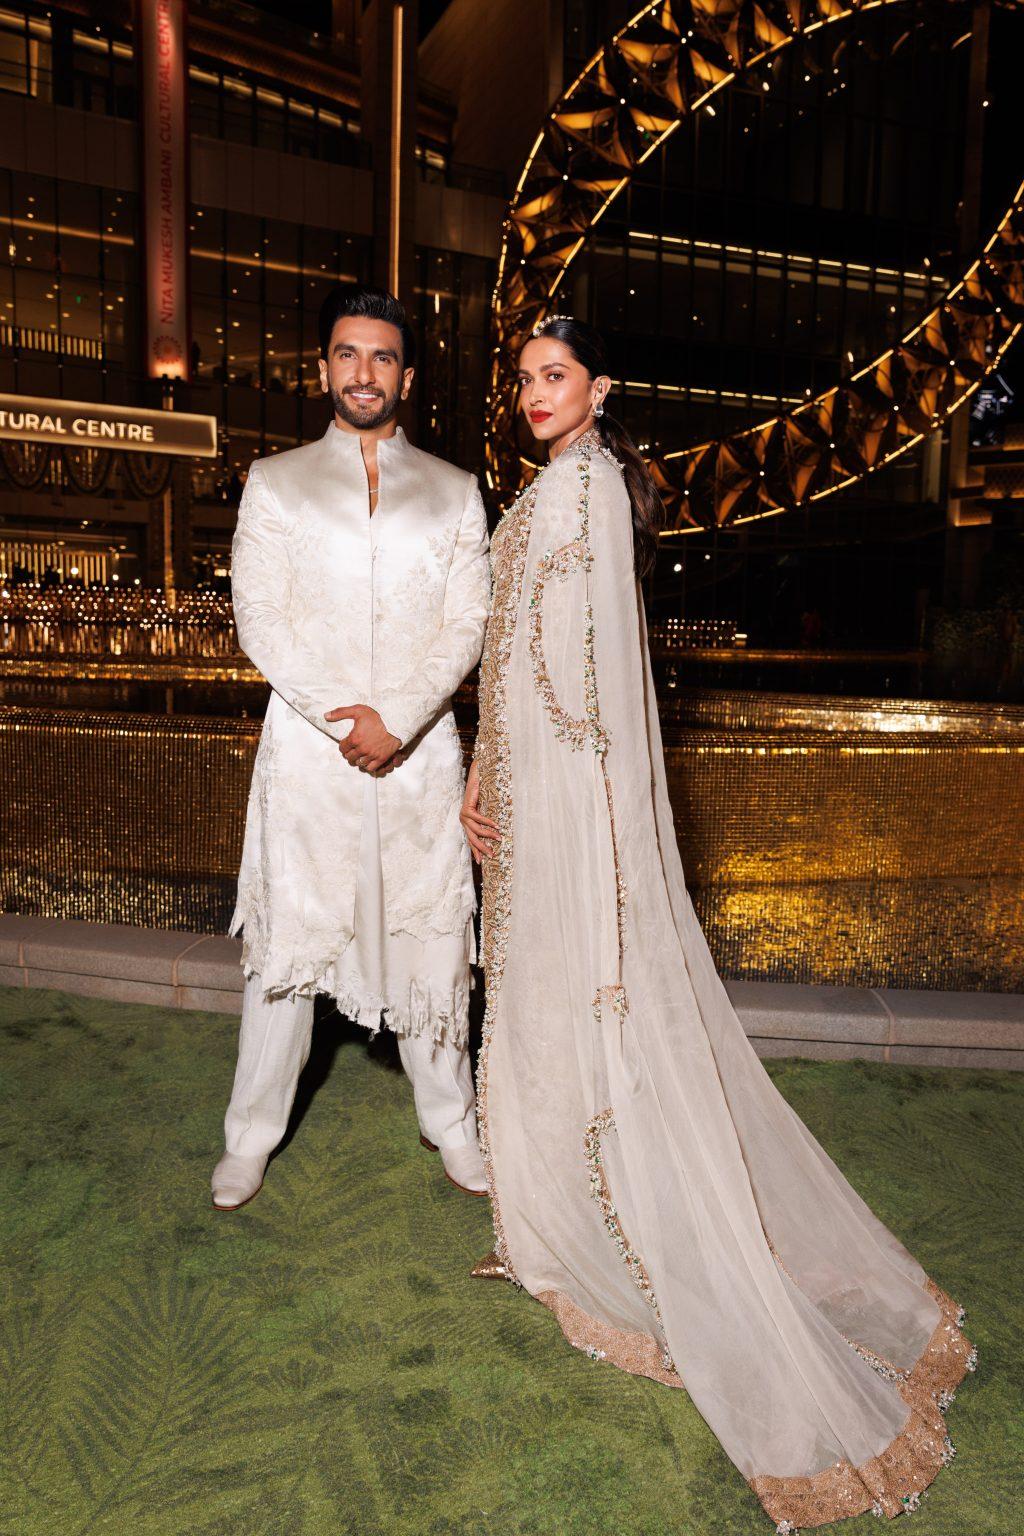 All The Pictures + Videos From Deepika Padukone & Ranveer Singh's Wedding